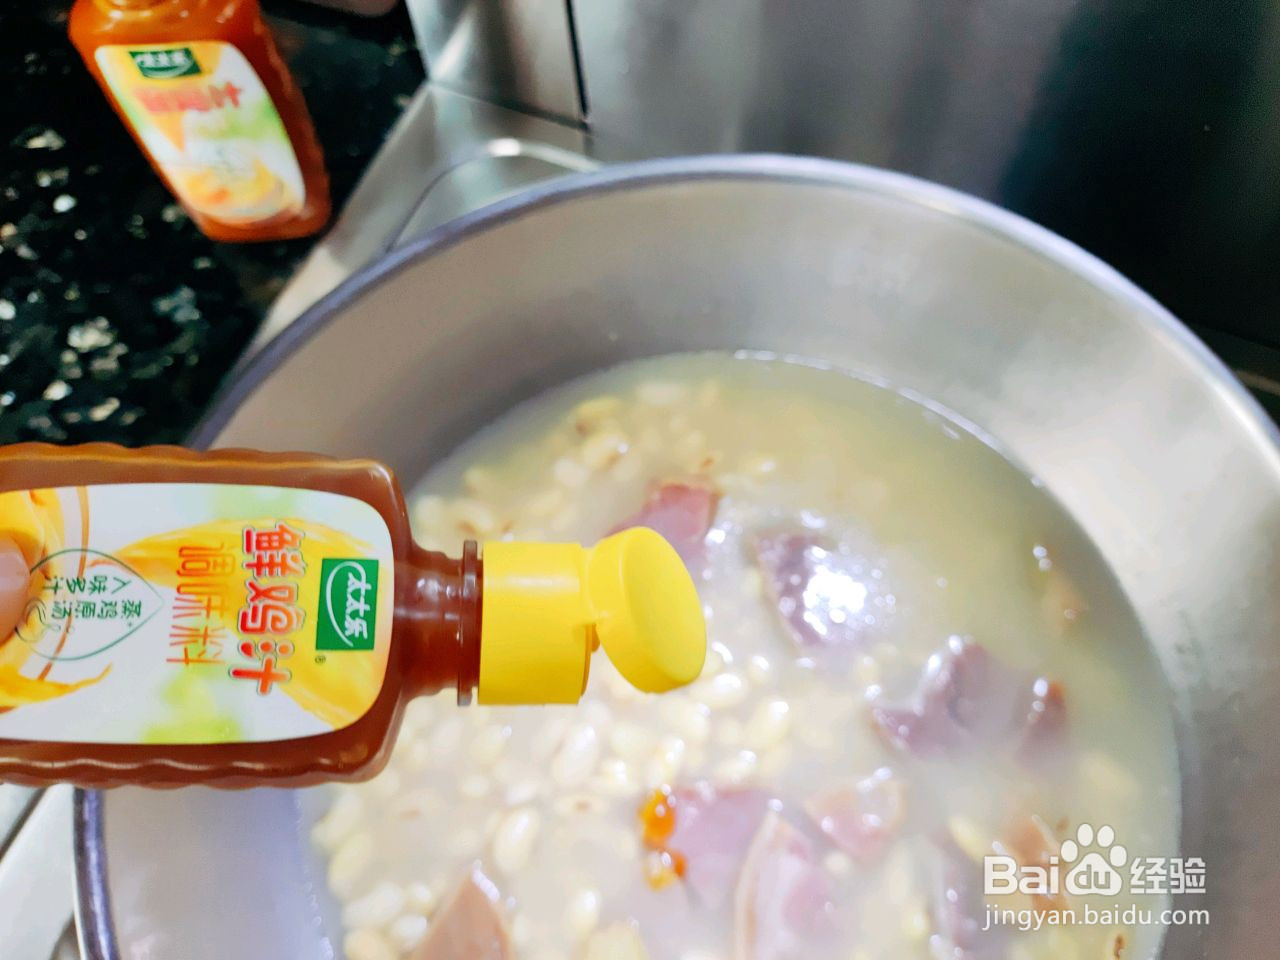 鸡汁火腿炖黄豆的做法